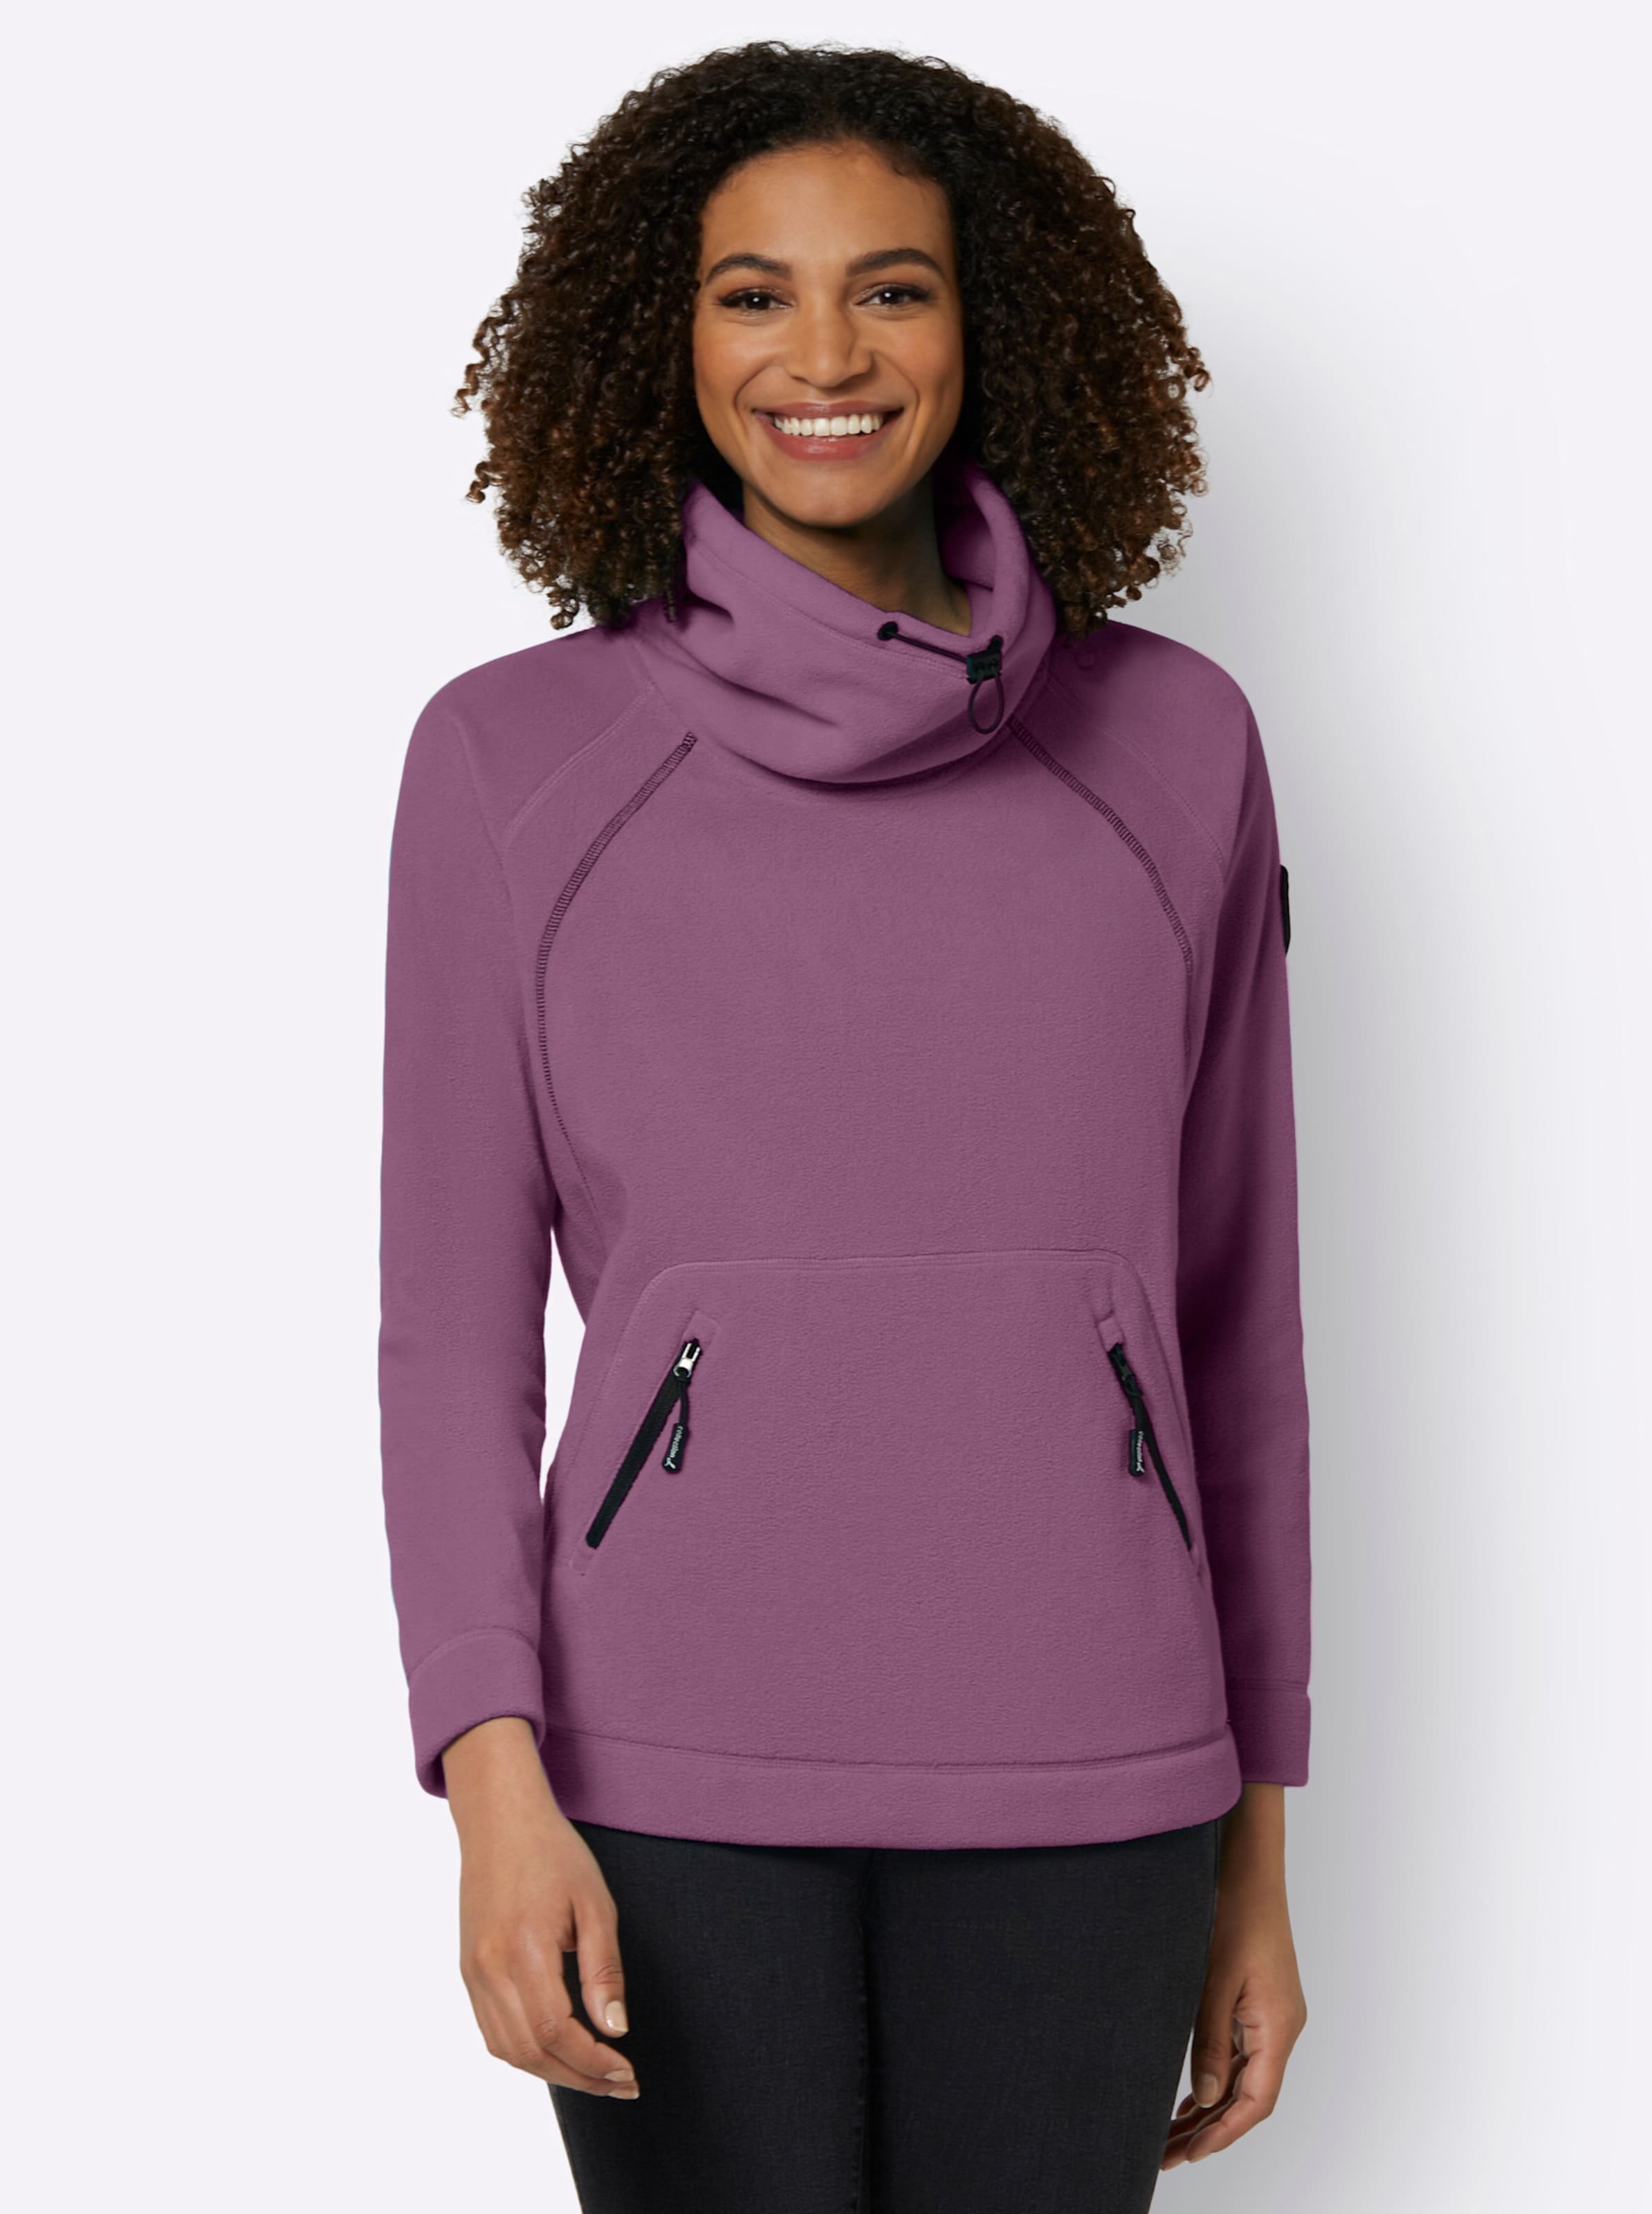 Rollkragen Shirt günstig Kaufen-Fleeceshirt in violett von heine. Fleeceshirt in violett von heine <![CDATA[Kuschelig weich und angenehm wärmend: Das Fleece-Shirt ist ein absolutes Lieblingsstück bei kühlen Temperaturen. Trendy durch den halsfernen Rollkragen mit Tunnelzug, kontrastf